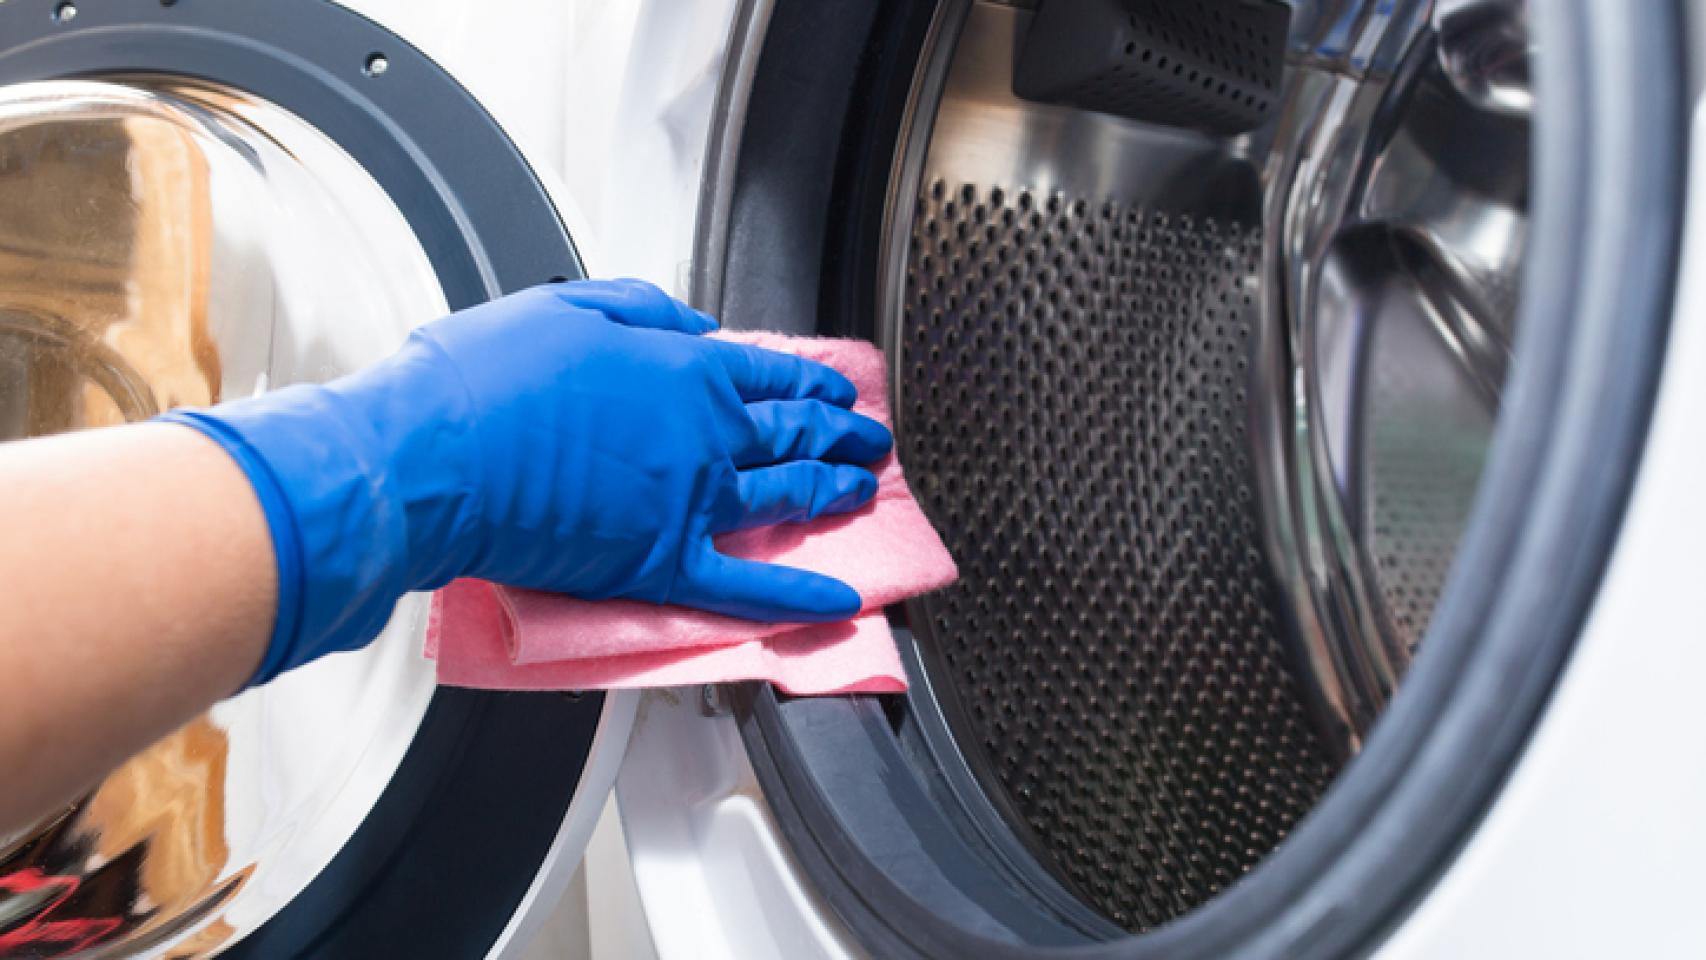 Al por menor cavar pobre Cómo limpiar tu lavadora para que la ropa no huela mal